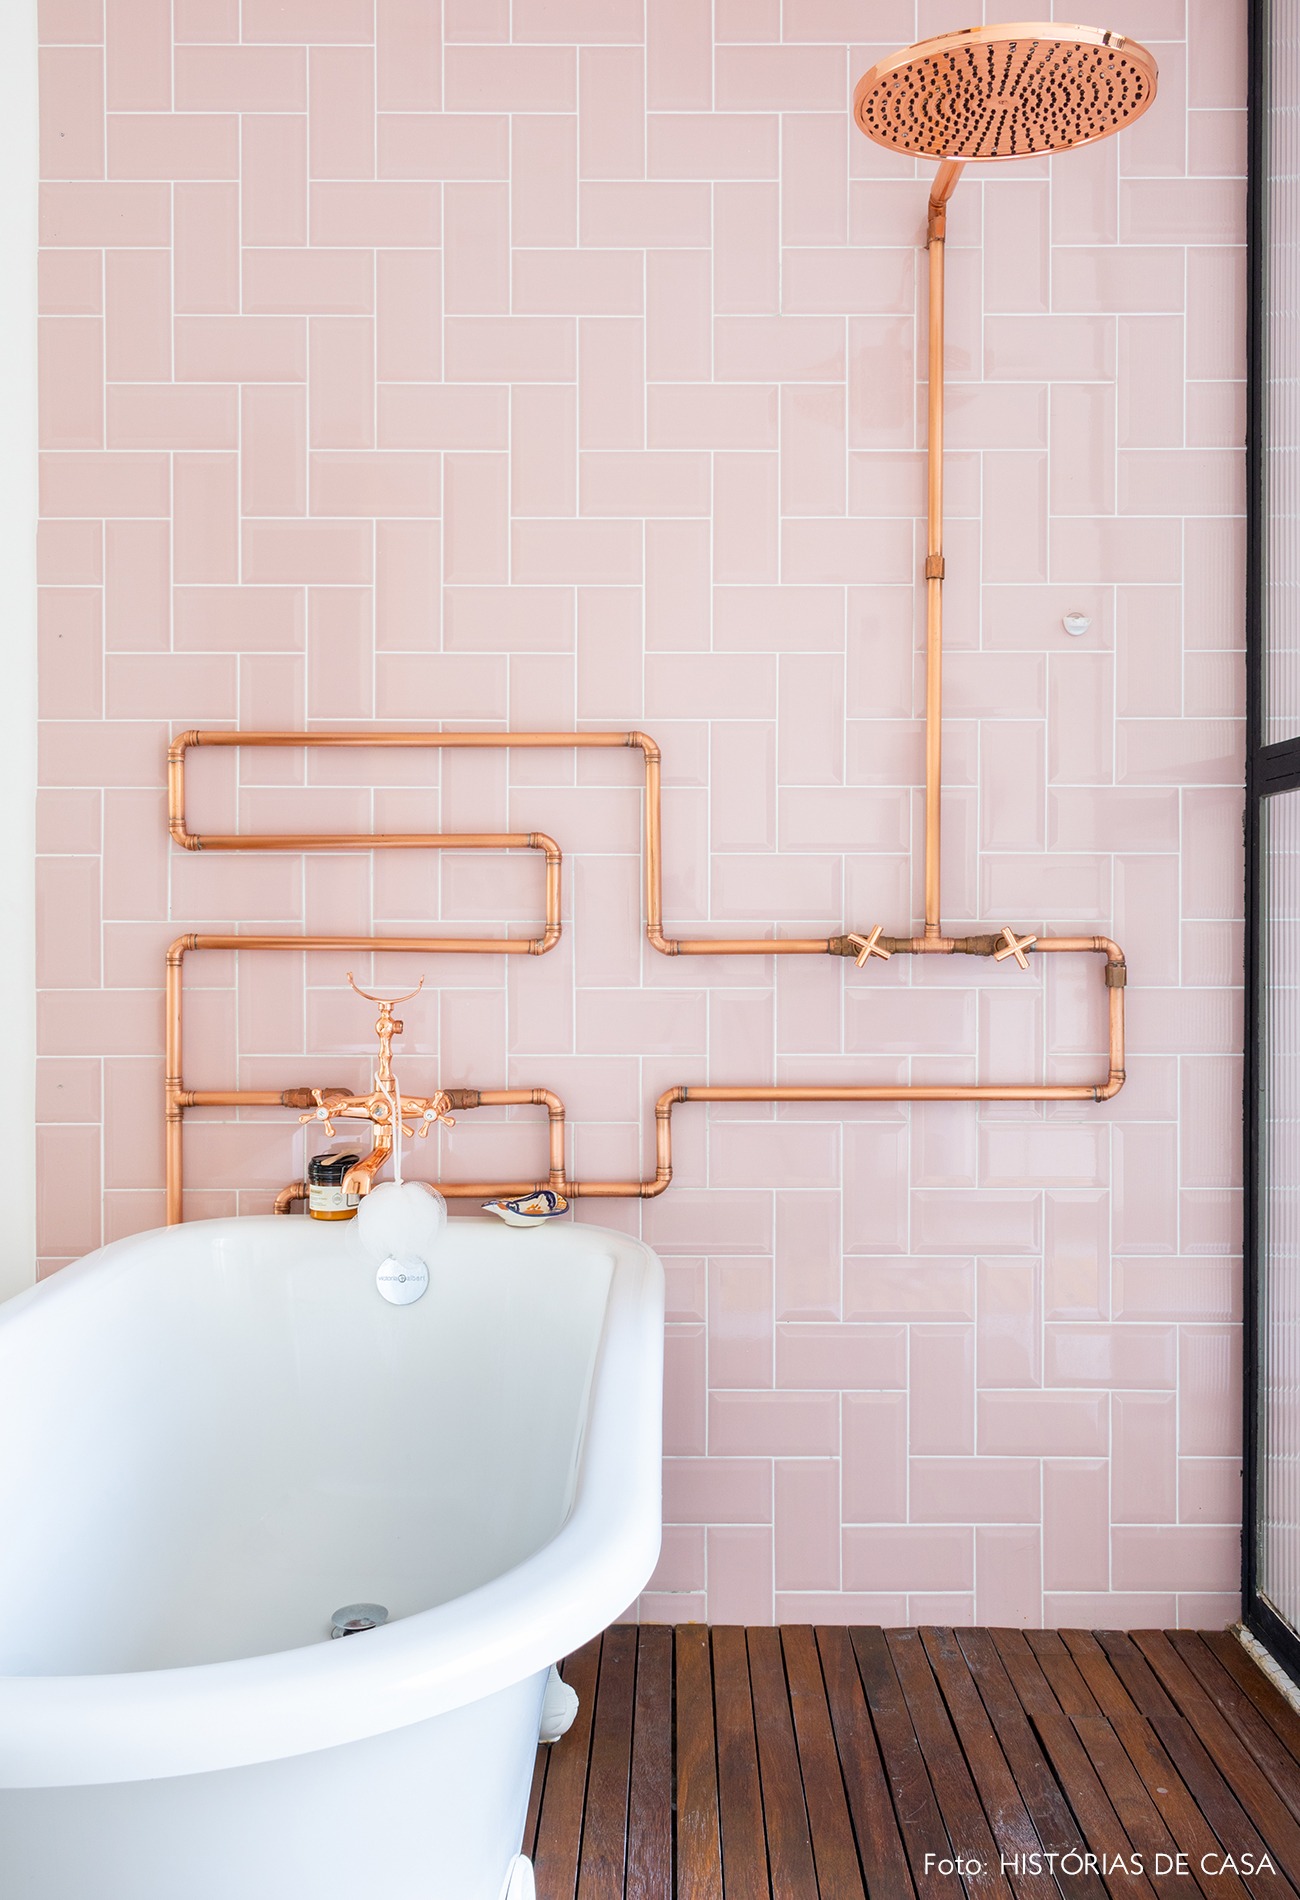 banheiro-parede-rosa-canos-cobre-banheira-branca